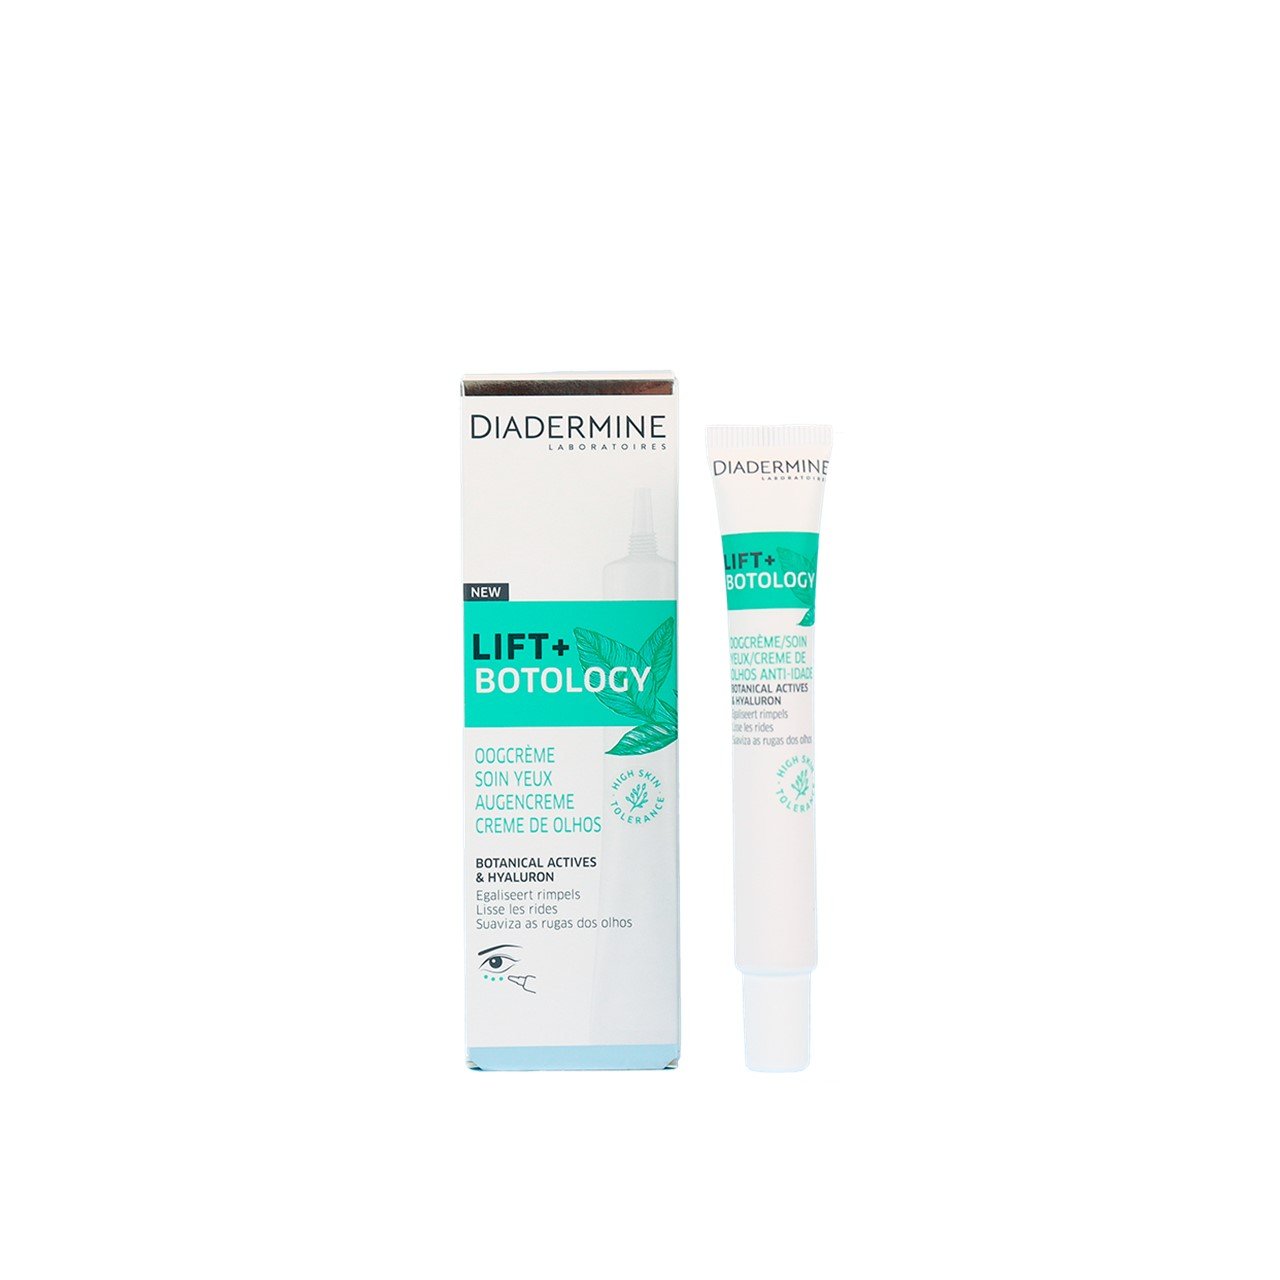 Diadermine Lift+ Botology Eye Contour Cream 15ml (0.51fl oz)